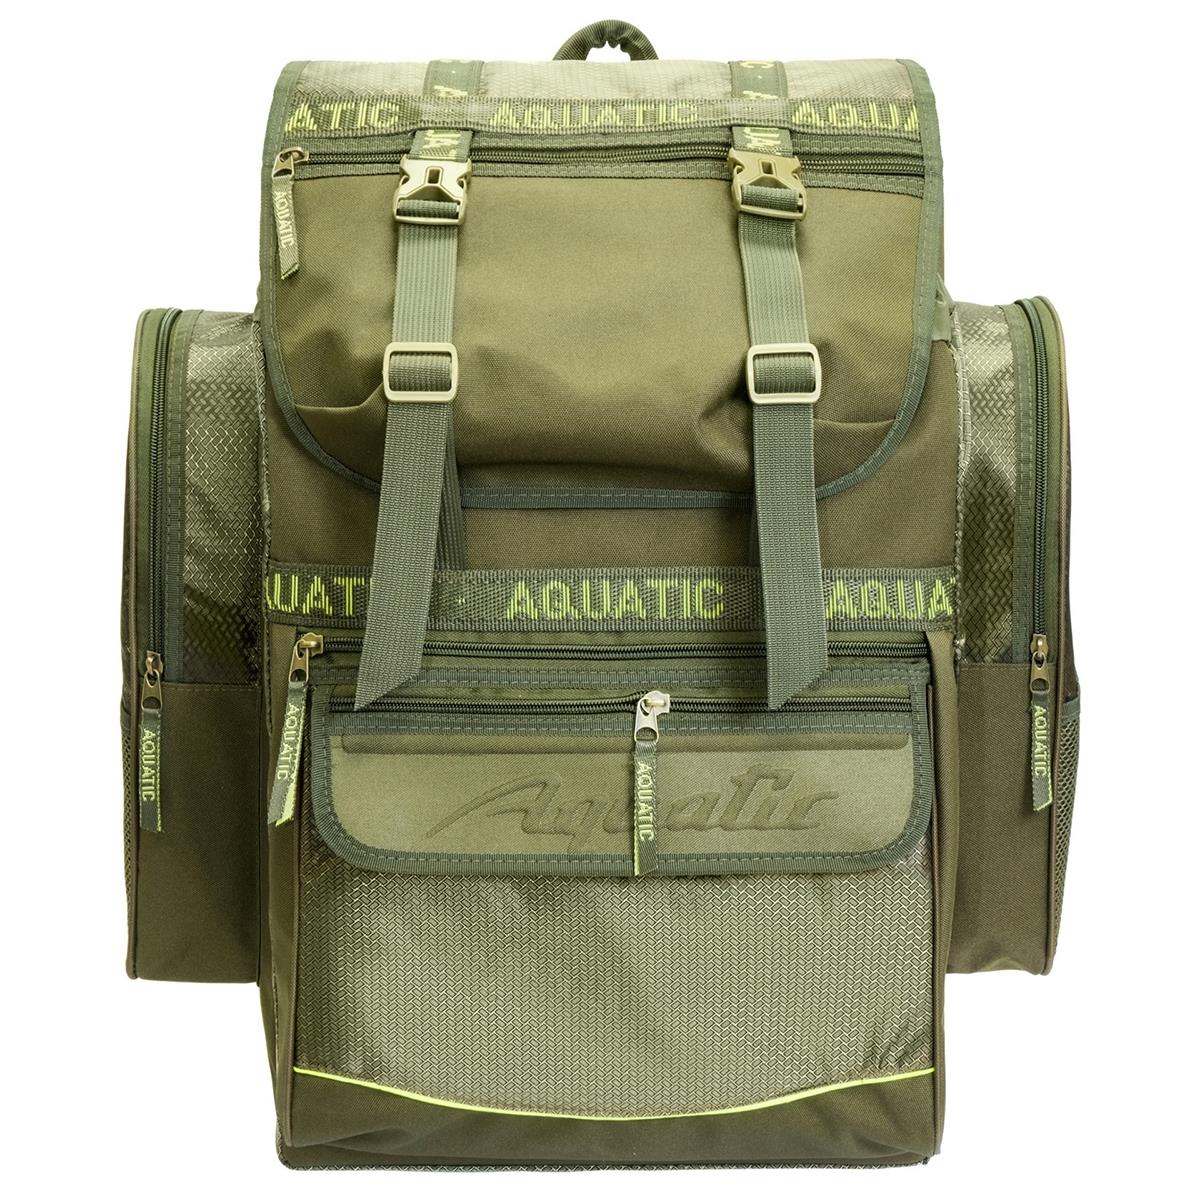 Рюкзак рыболовный (Р-60) Aquatic рыболовный рюкзак lucky john